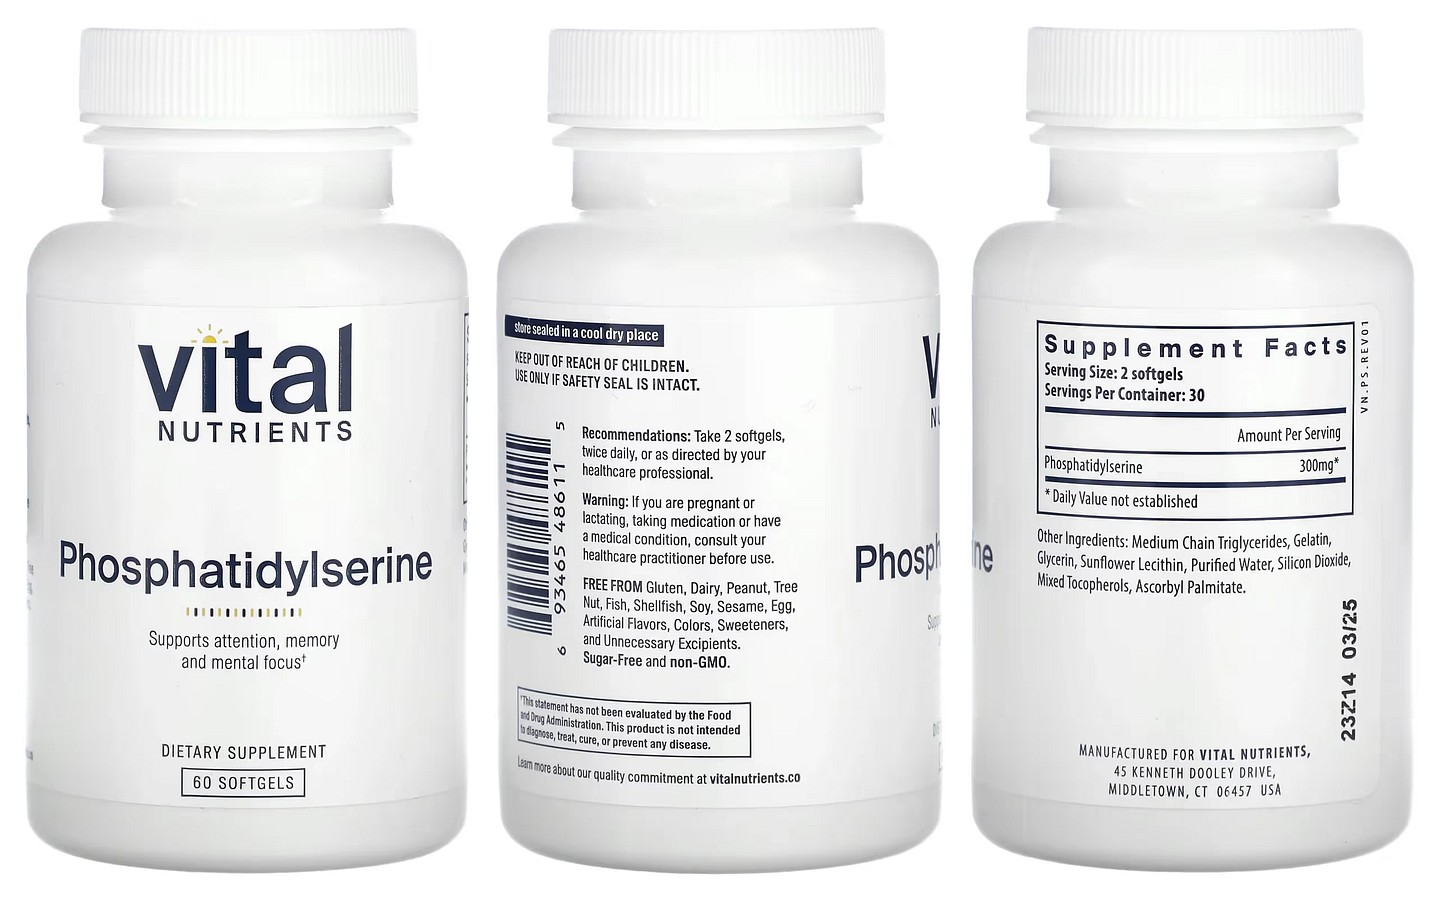 Vital Nutrients, Phosphatidylserine packaging